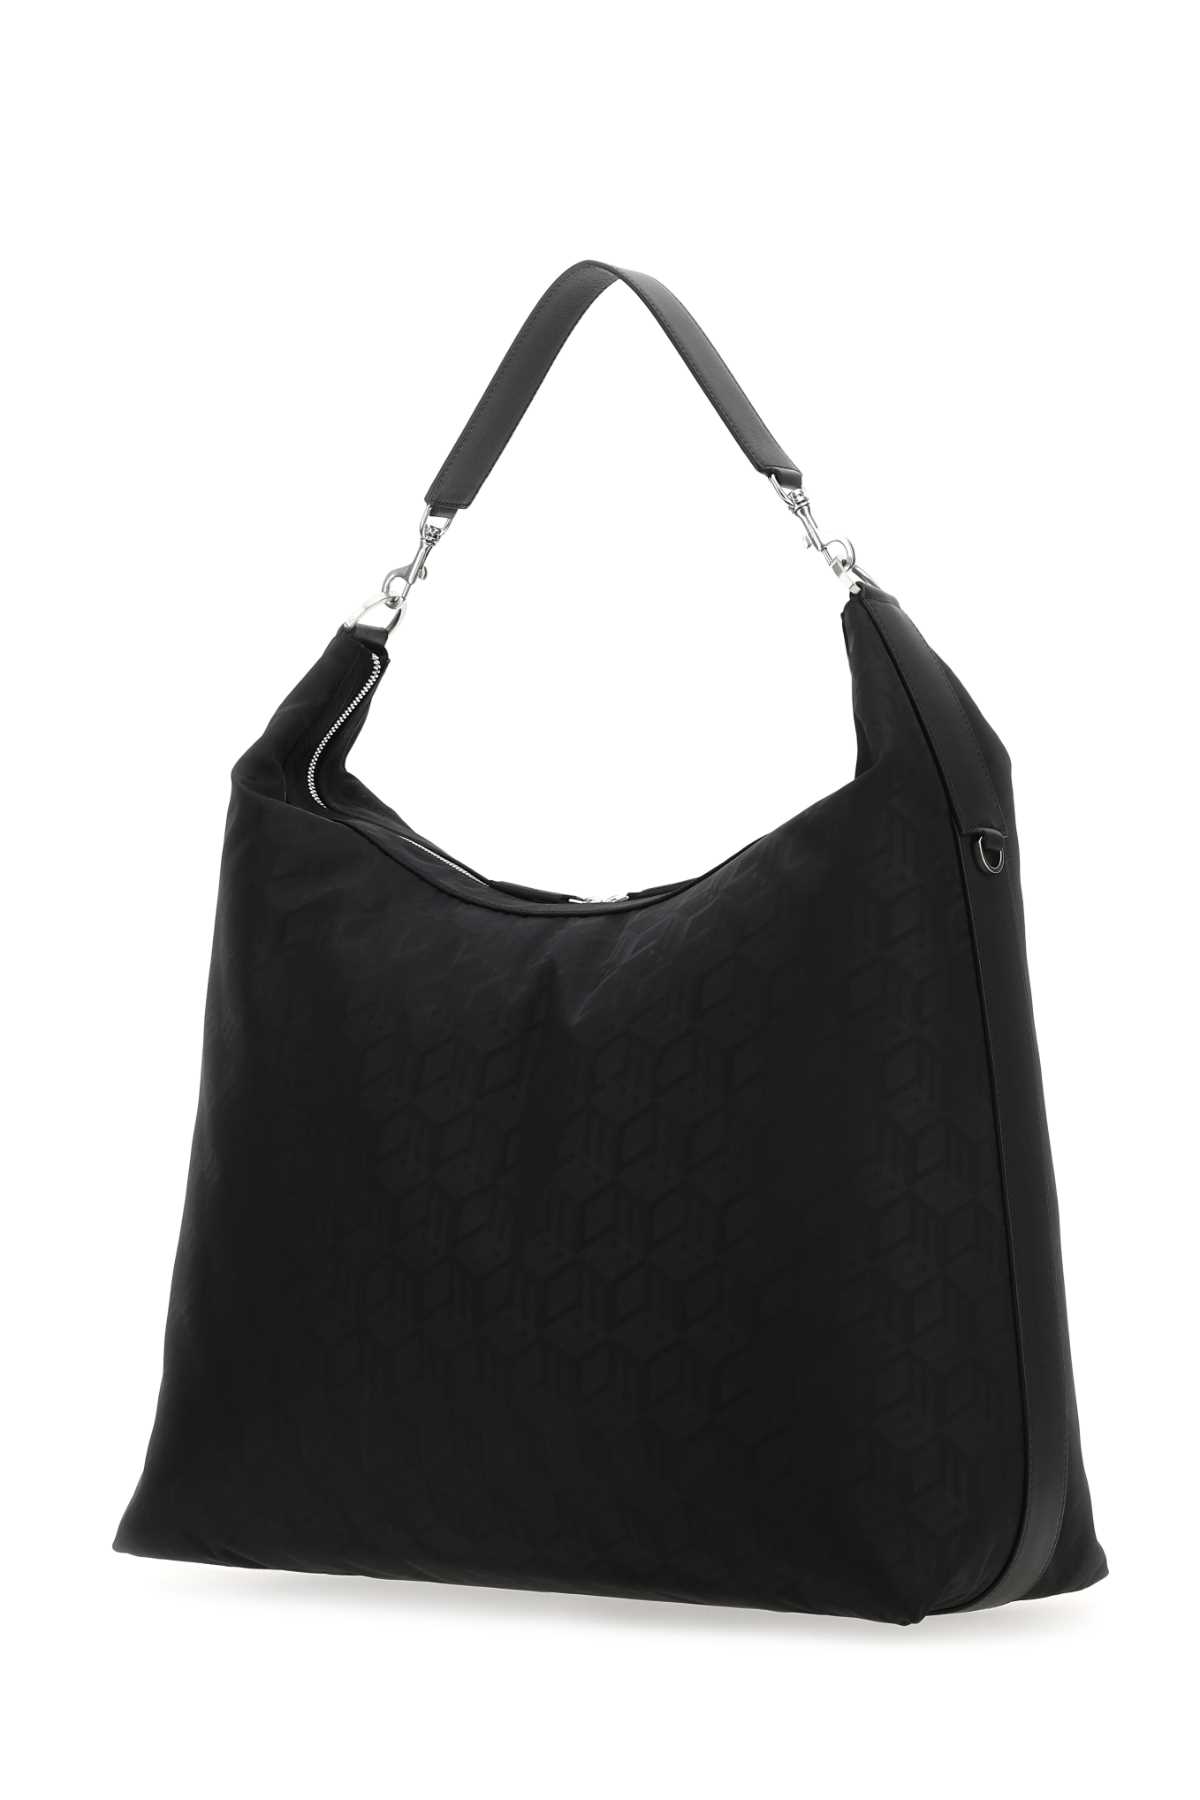 Mcm Black Nylon Aren Shoulder Bag In Bk